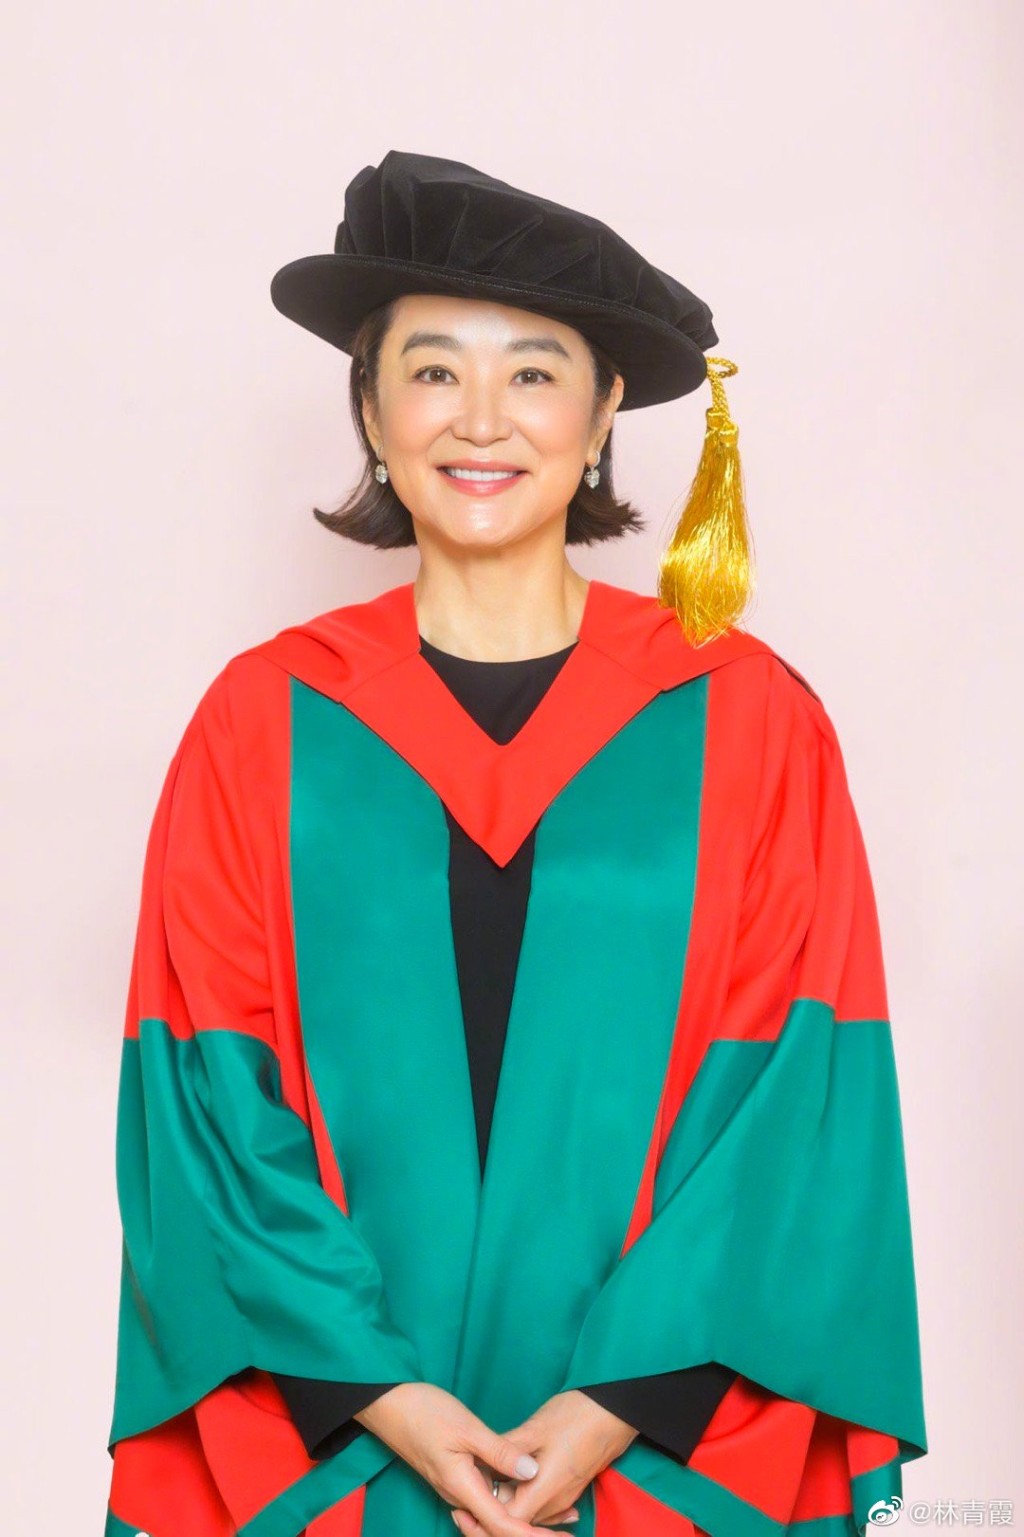 林青霞去年底更獲香港大學頒授「名譽社會科學博士學位」。